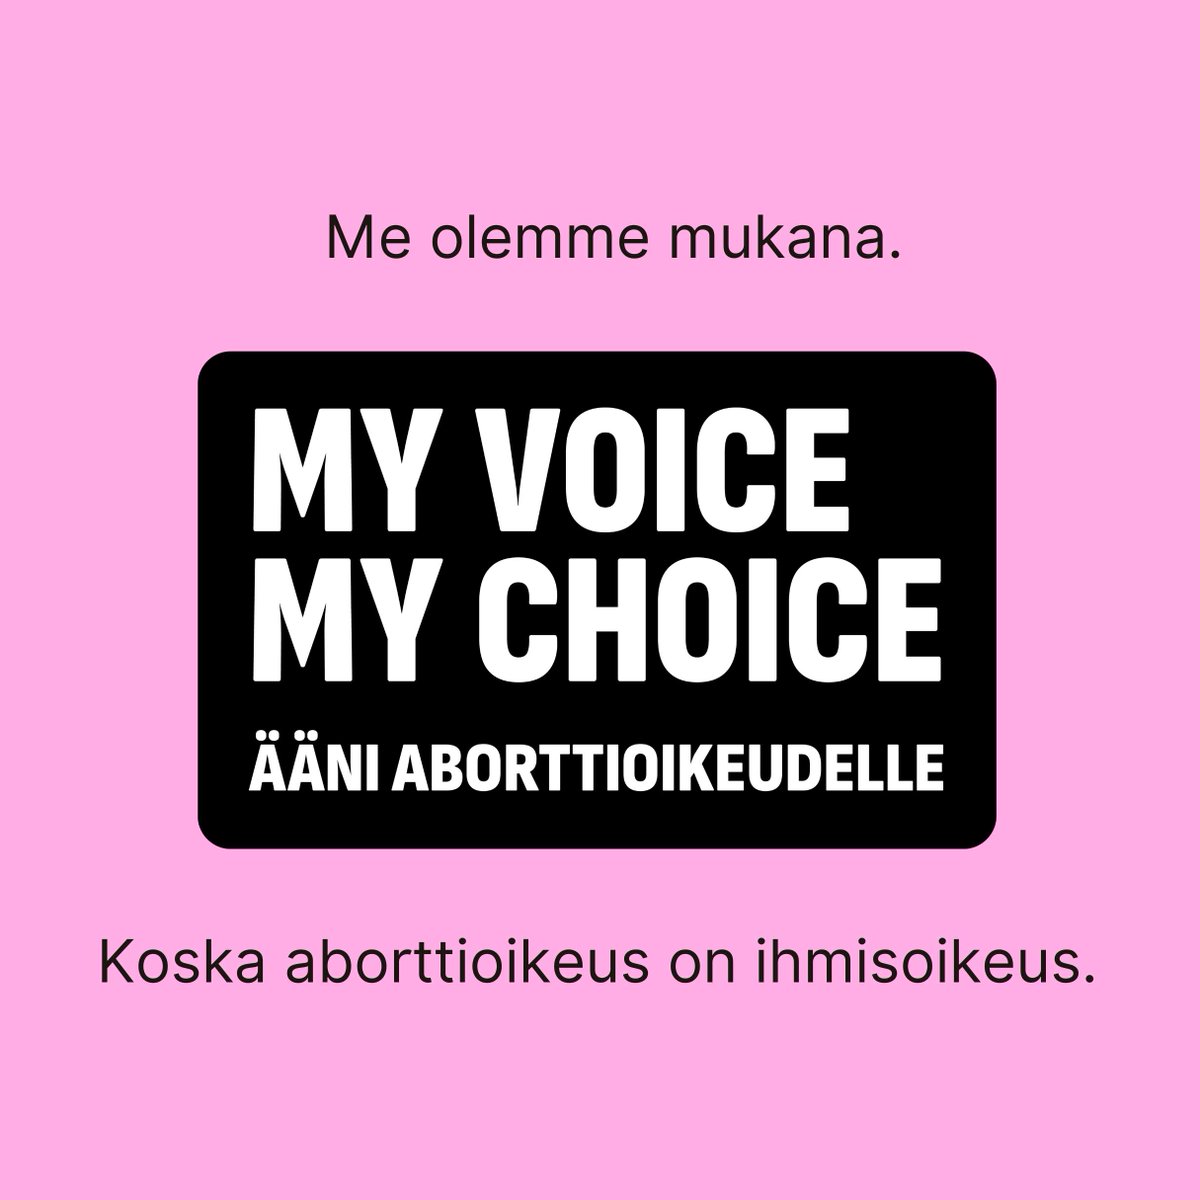 Turvallinen abortti on ihmisoikeus. 🫰 Olemme mukana tukemassa eurooppalaista kansalaisaloitetta aborttioikeuden varmistamiseksi kaikkialla EU:ssa. @naisunioni @MVMC_24 #aborttioikeus #ÄäniAborttiOikeudelle #MyVoiceMyChoice #ihmisoikeudet